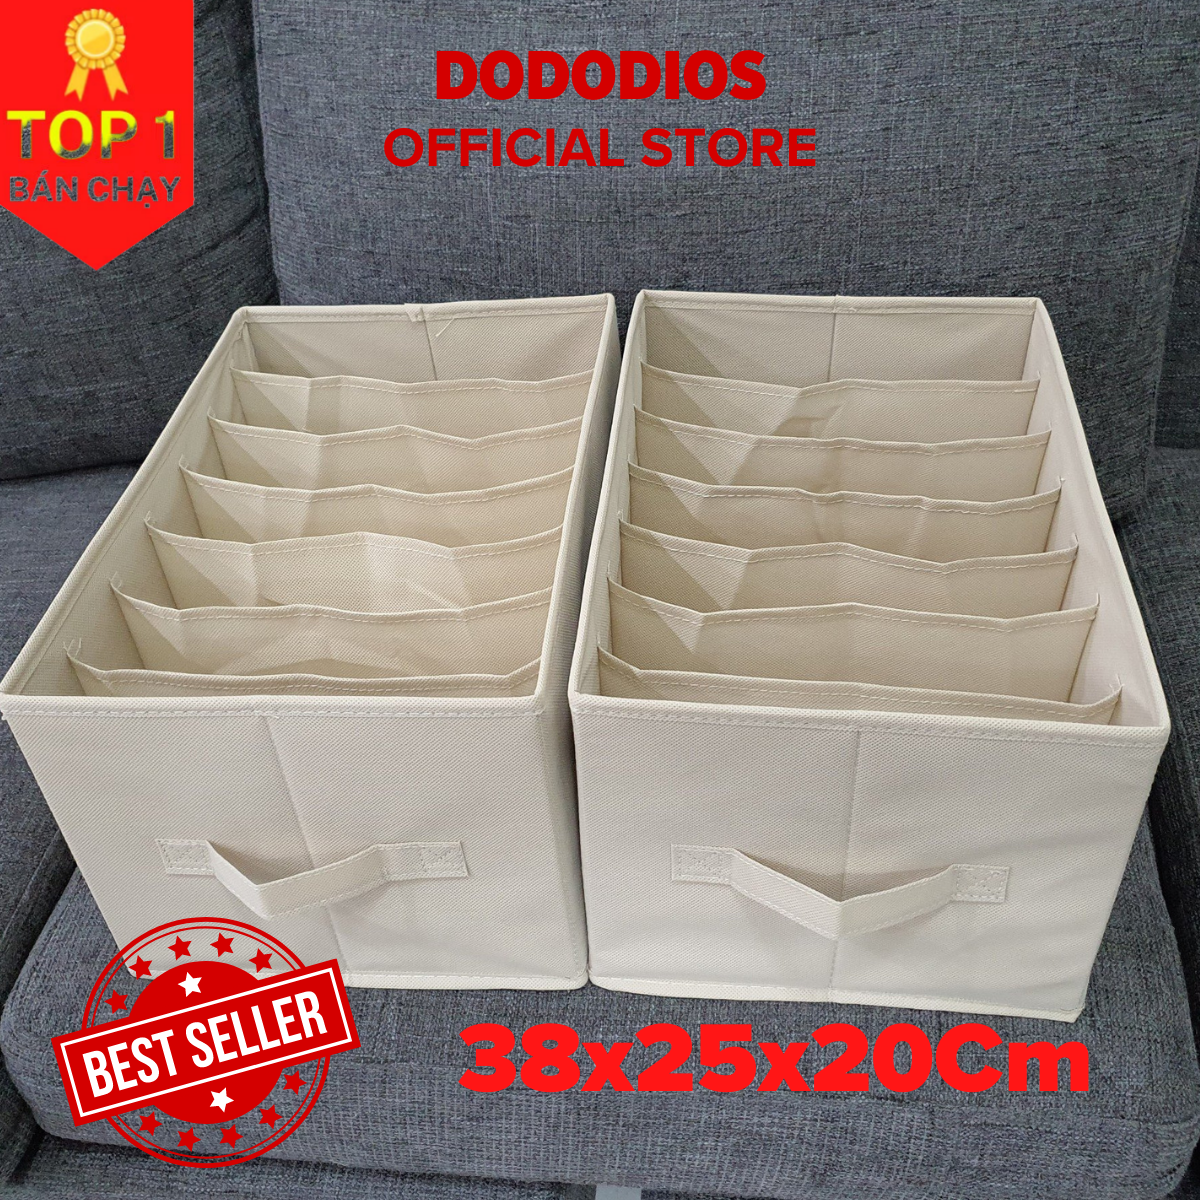 Hình ảnh Bộ 2 hộp đựng đồ chia 7 ngăn sắp xếp quần áo dododios - Hộp vải đa năng HQ2 tiện ích, chất liệu cao cấp, phong cách Nhật Bản sang trọng